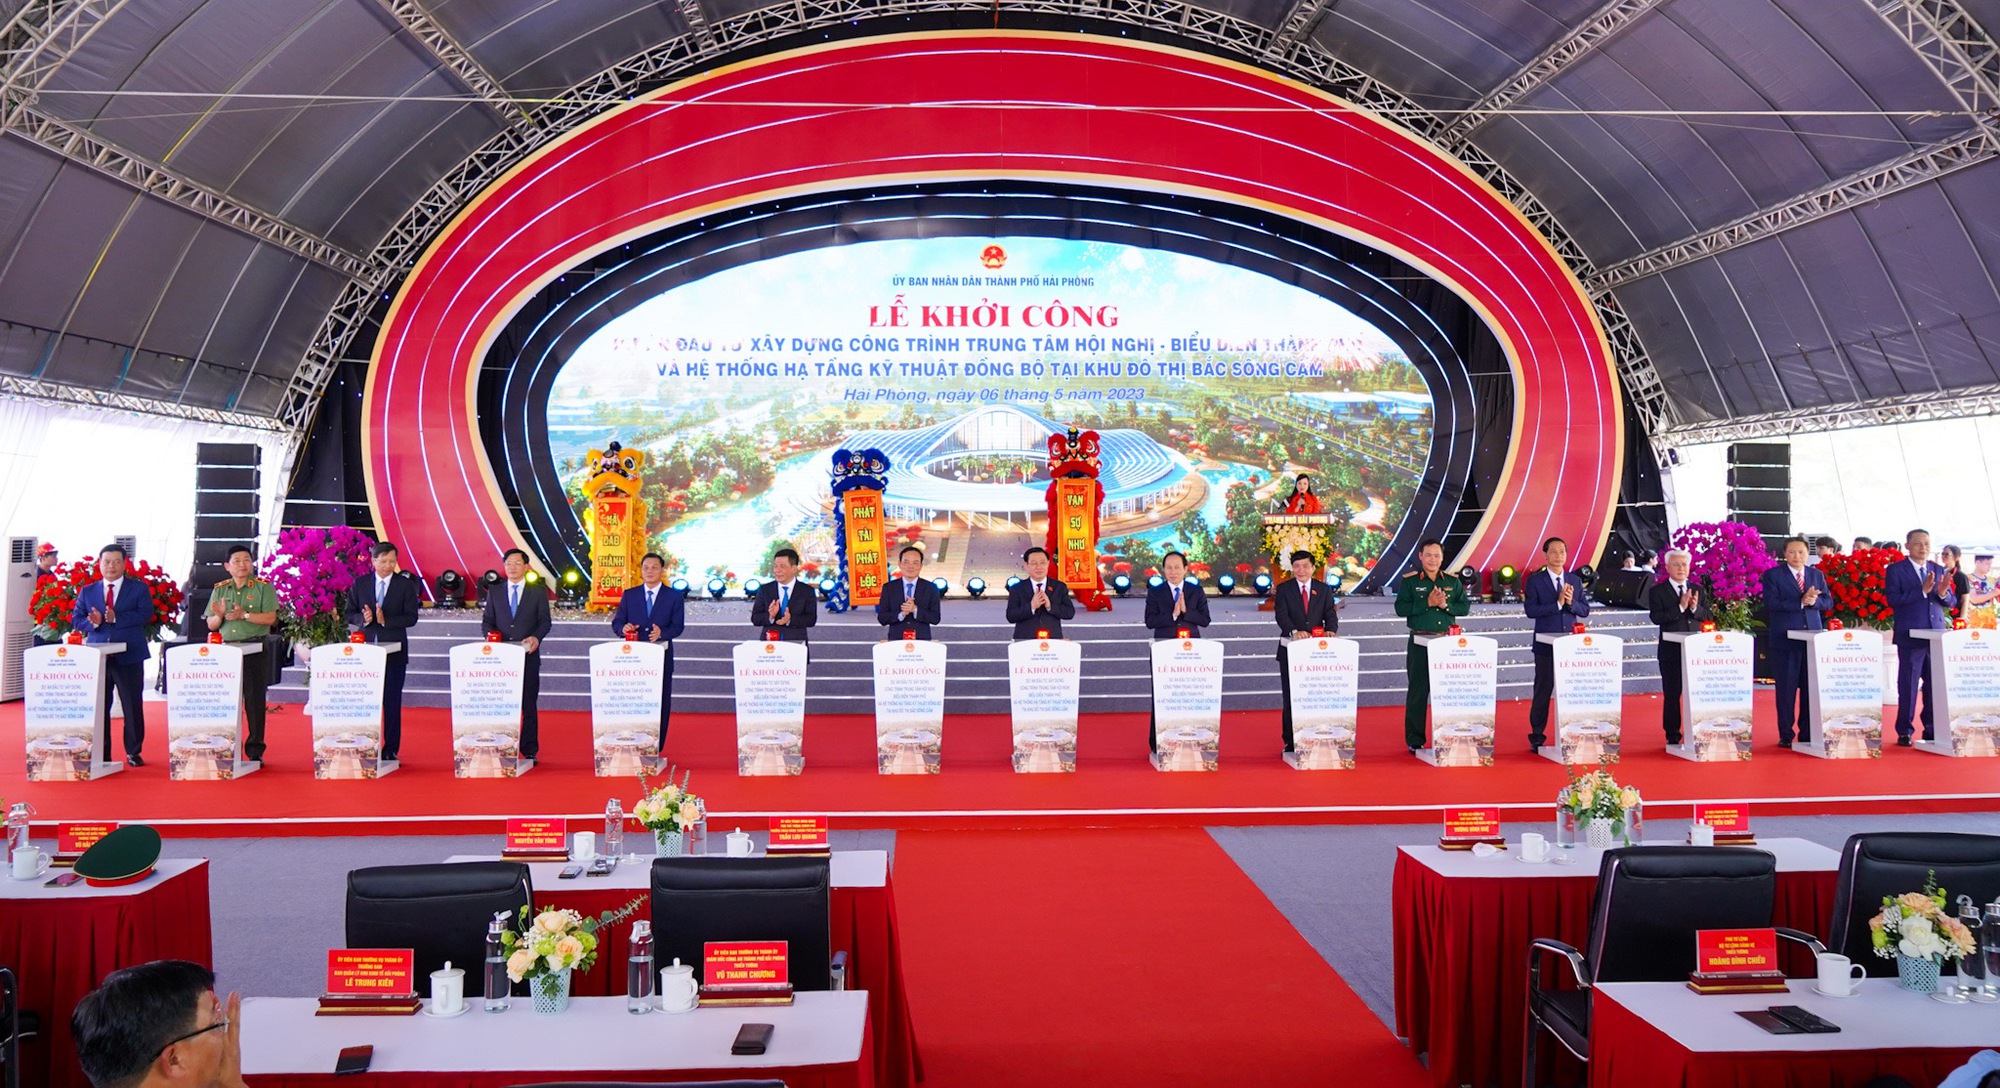 Các đại biểu bấm nút khởi công dự án Trung tâm Hội nghị - Biểu diễn thành phố Hải Phòng.